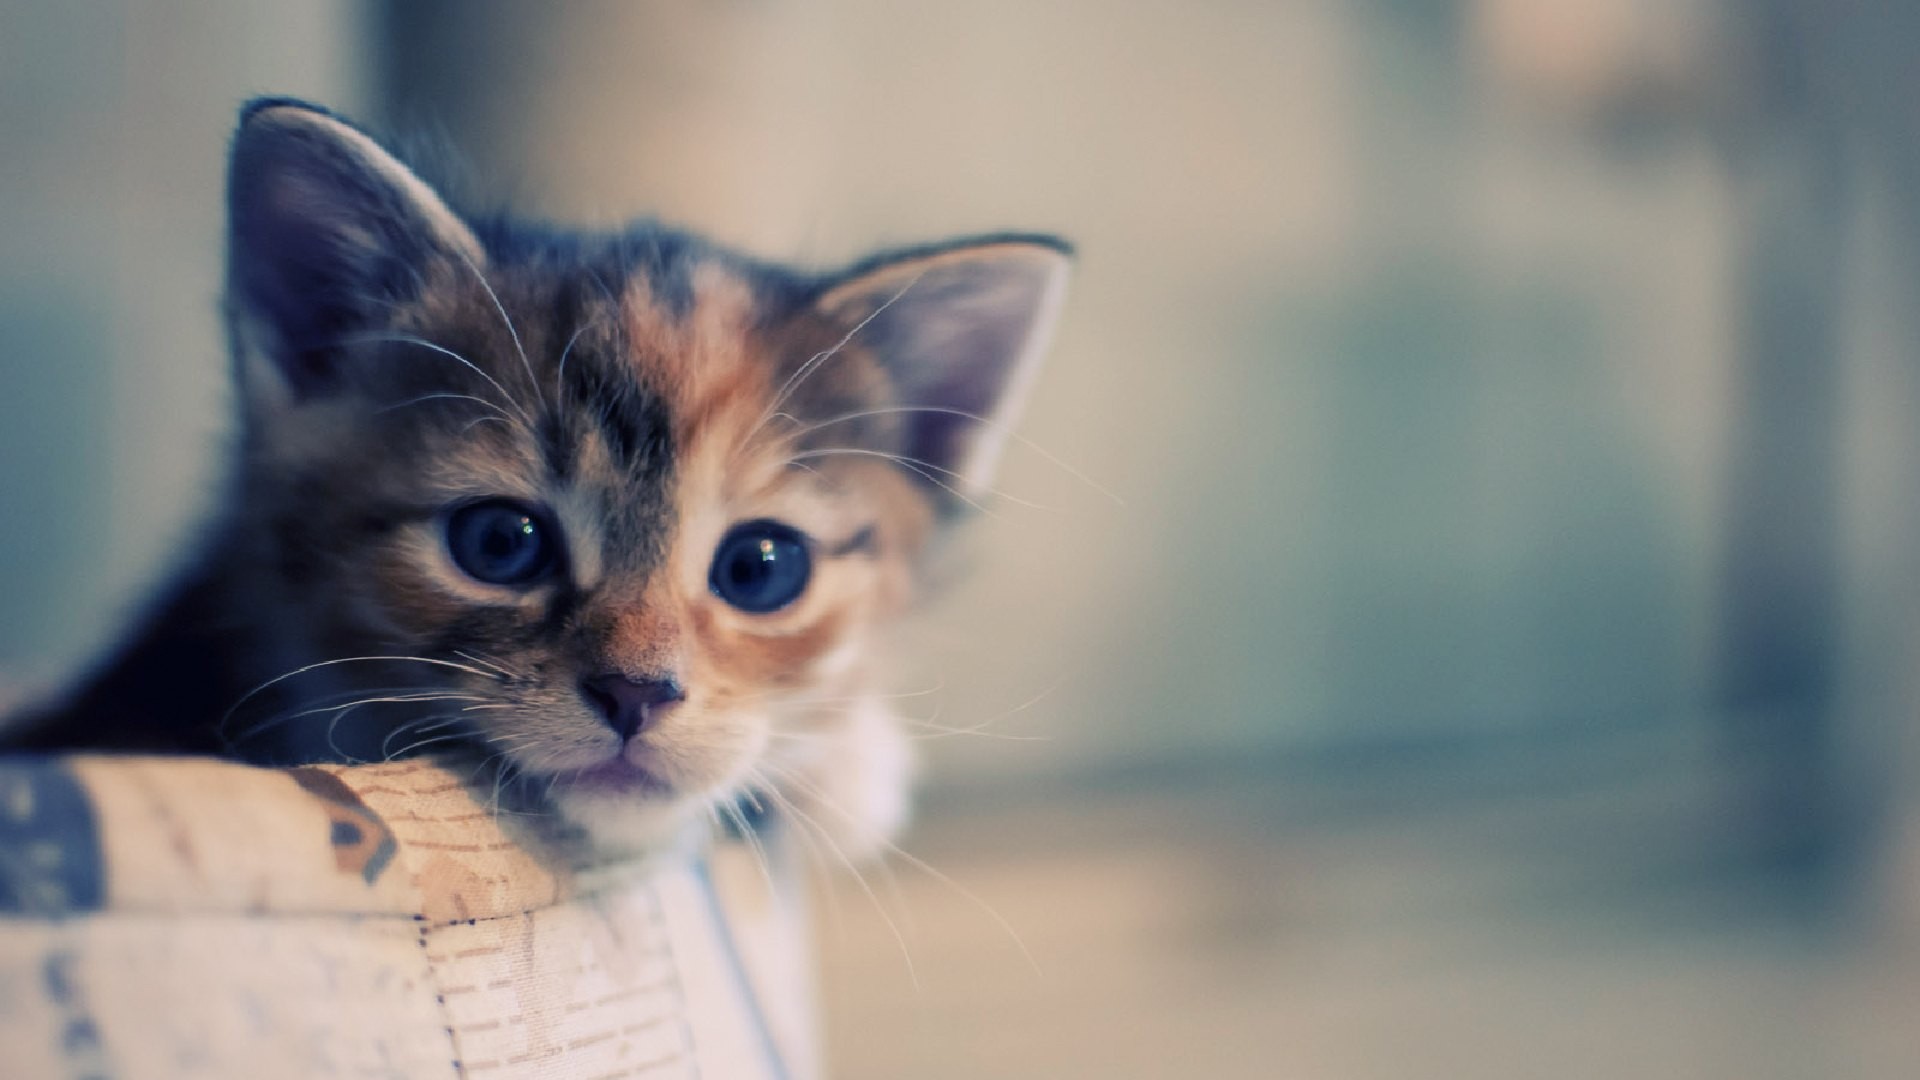 Cute kitten face